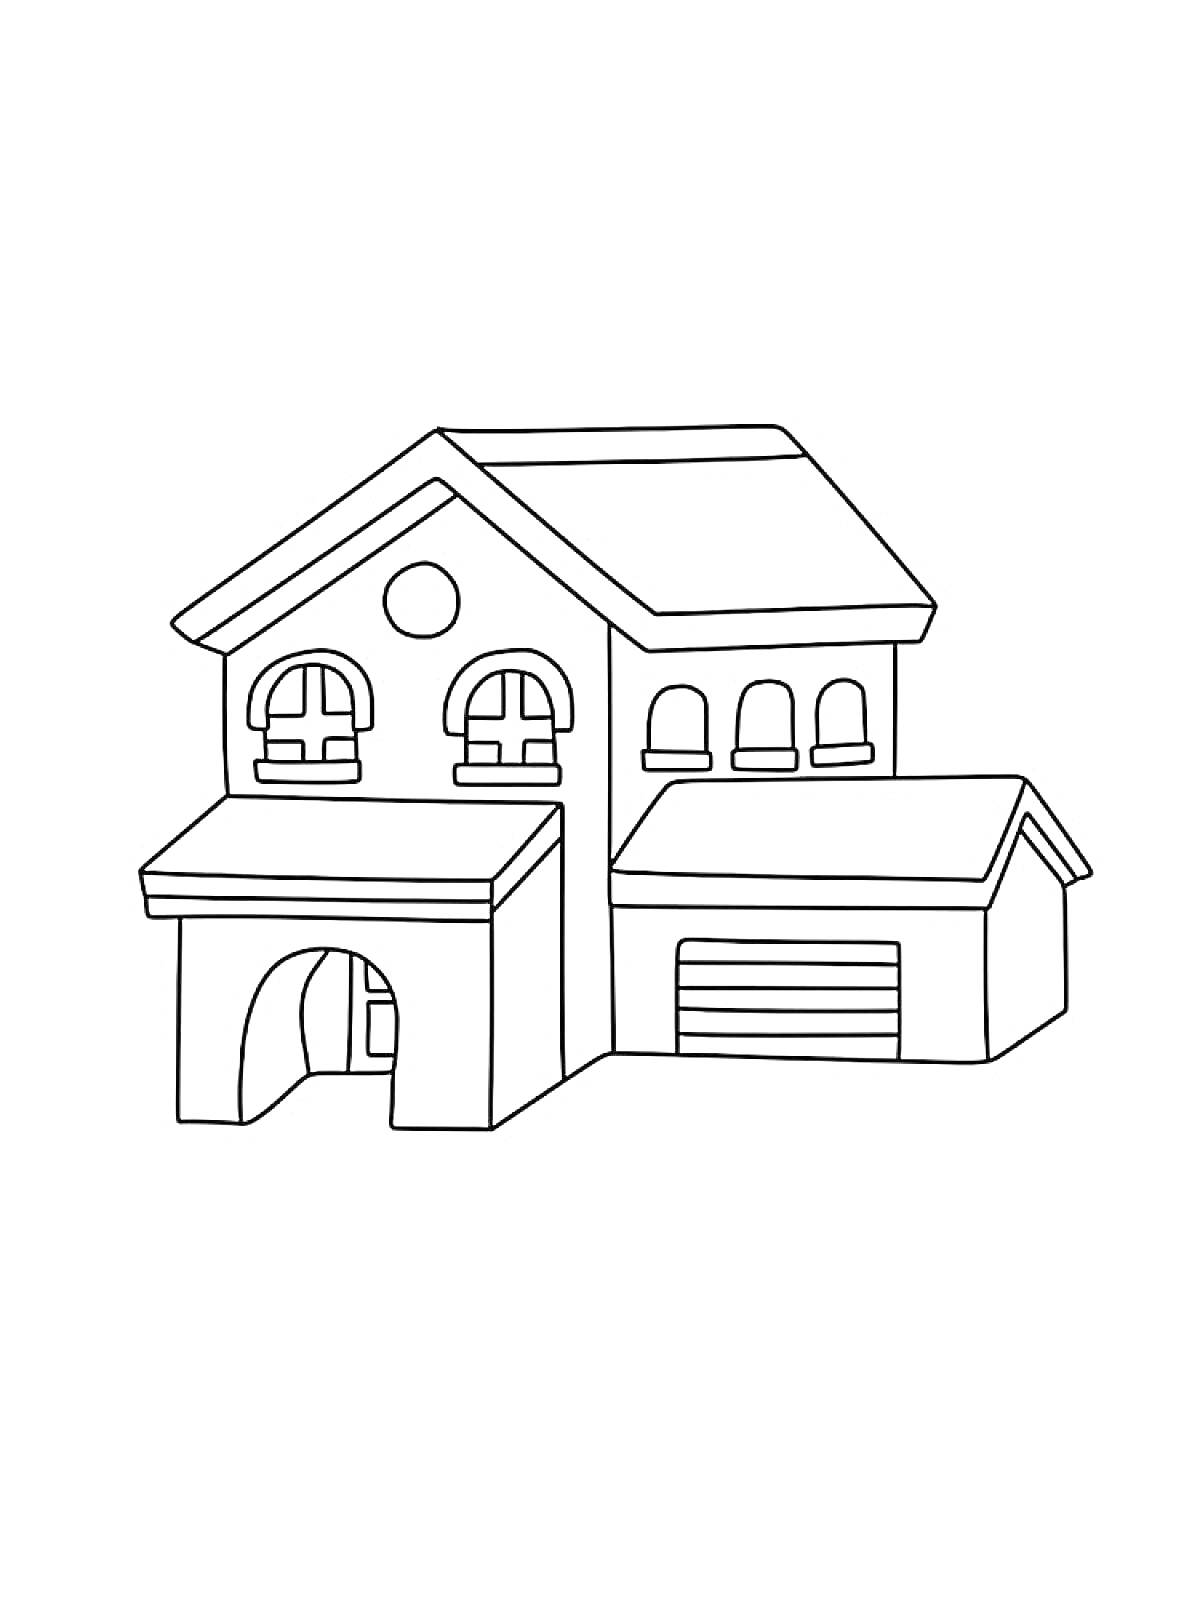 Раскраска Двухэтажный дом с арками, окнами и гаражом